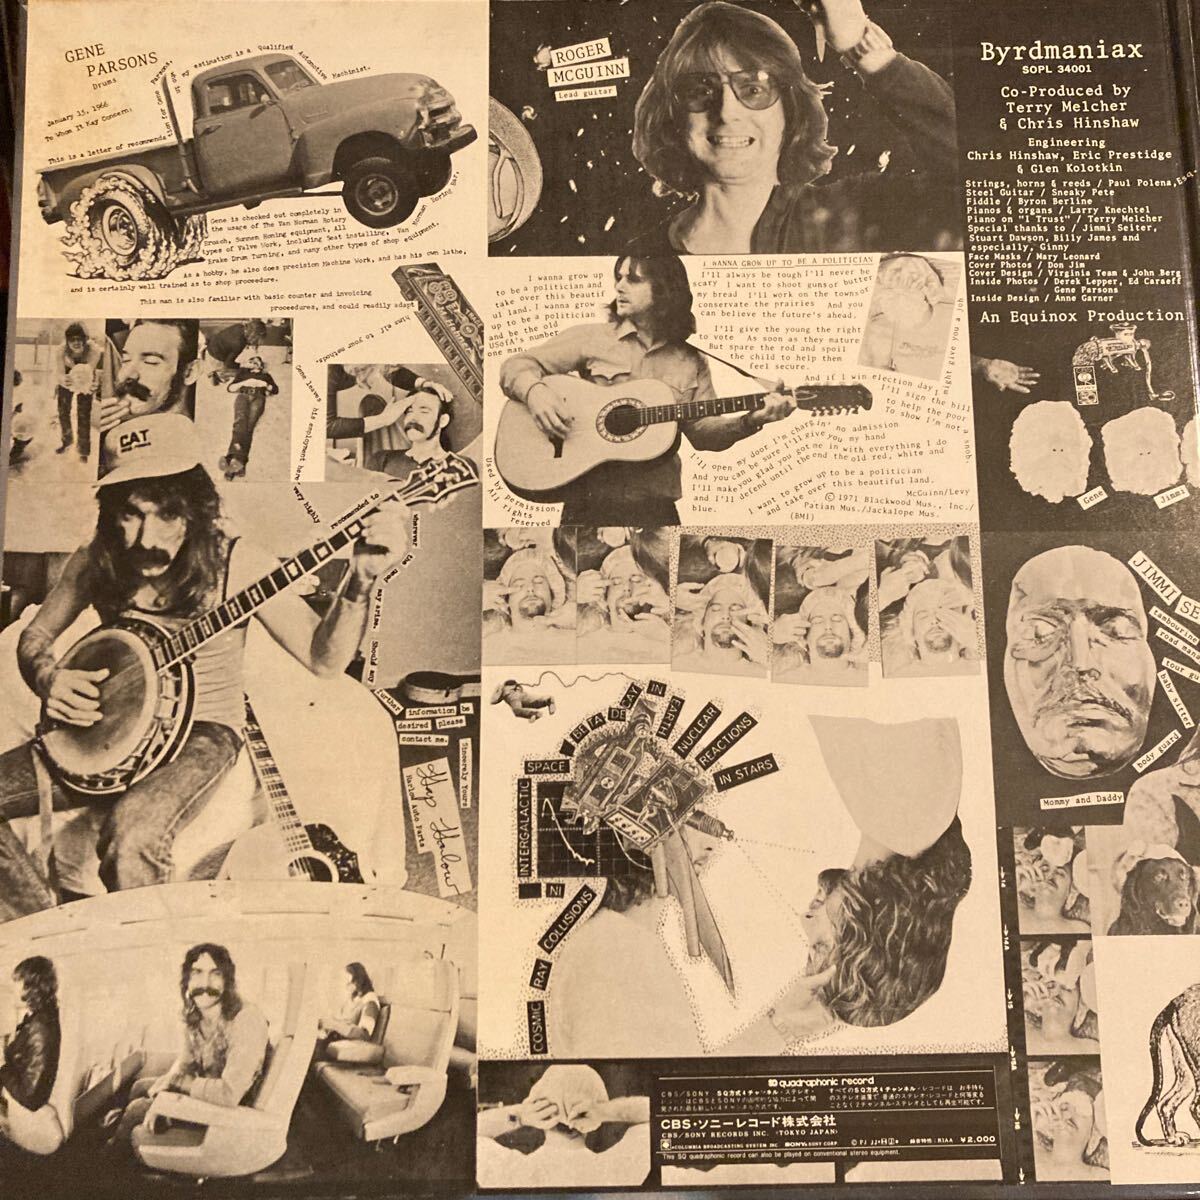 ザ・バーズ THE BYRDS / バードマニア Byrdmaniax 洋楽 ROCK 国内盤 LP レコード CLARENCE WHITE CBS quadraphonic SOPL-34001_画像3